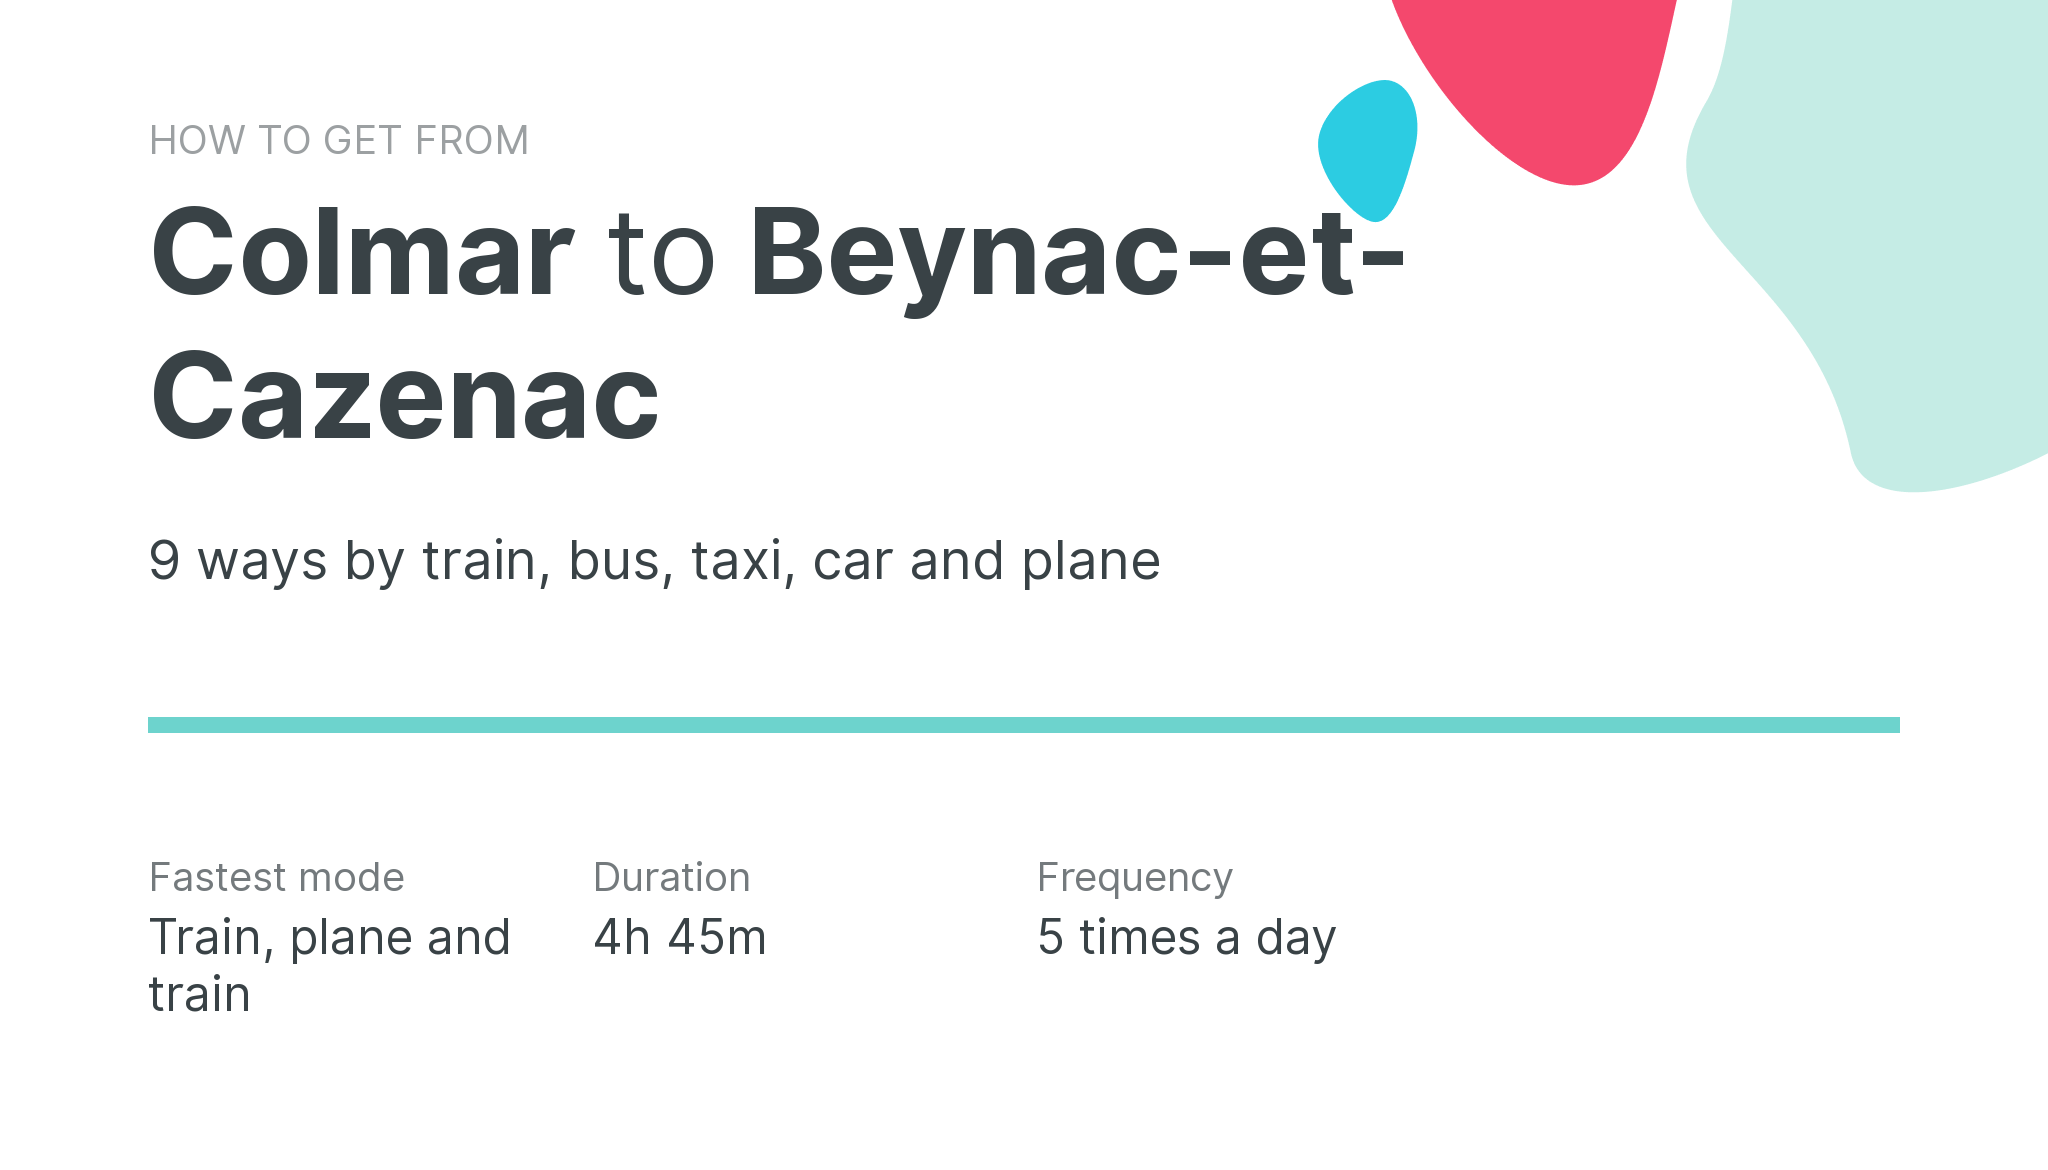 How do I get from Colmar to Beynac-et-Cazenac